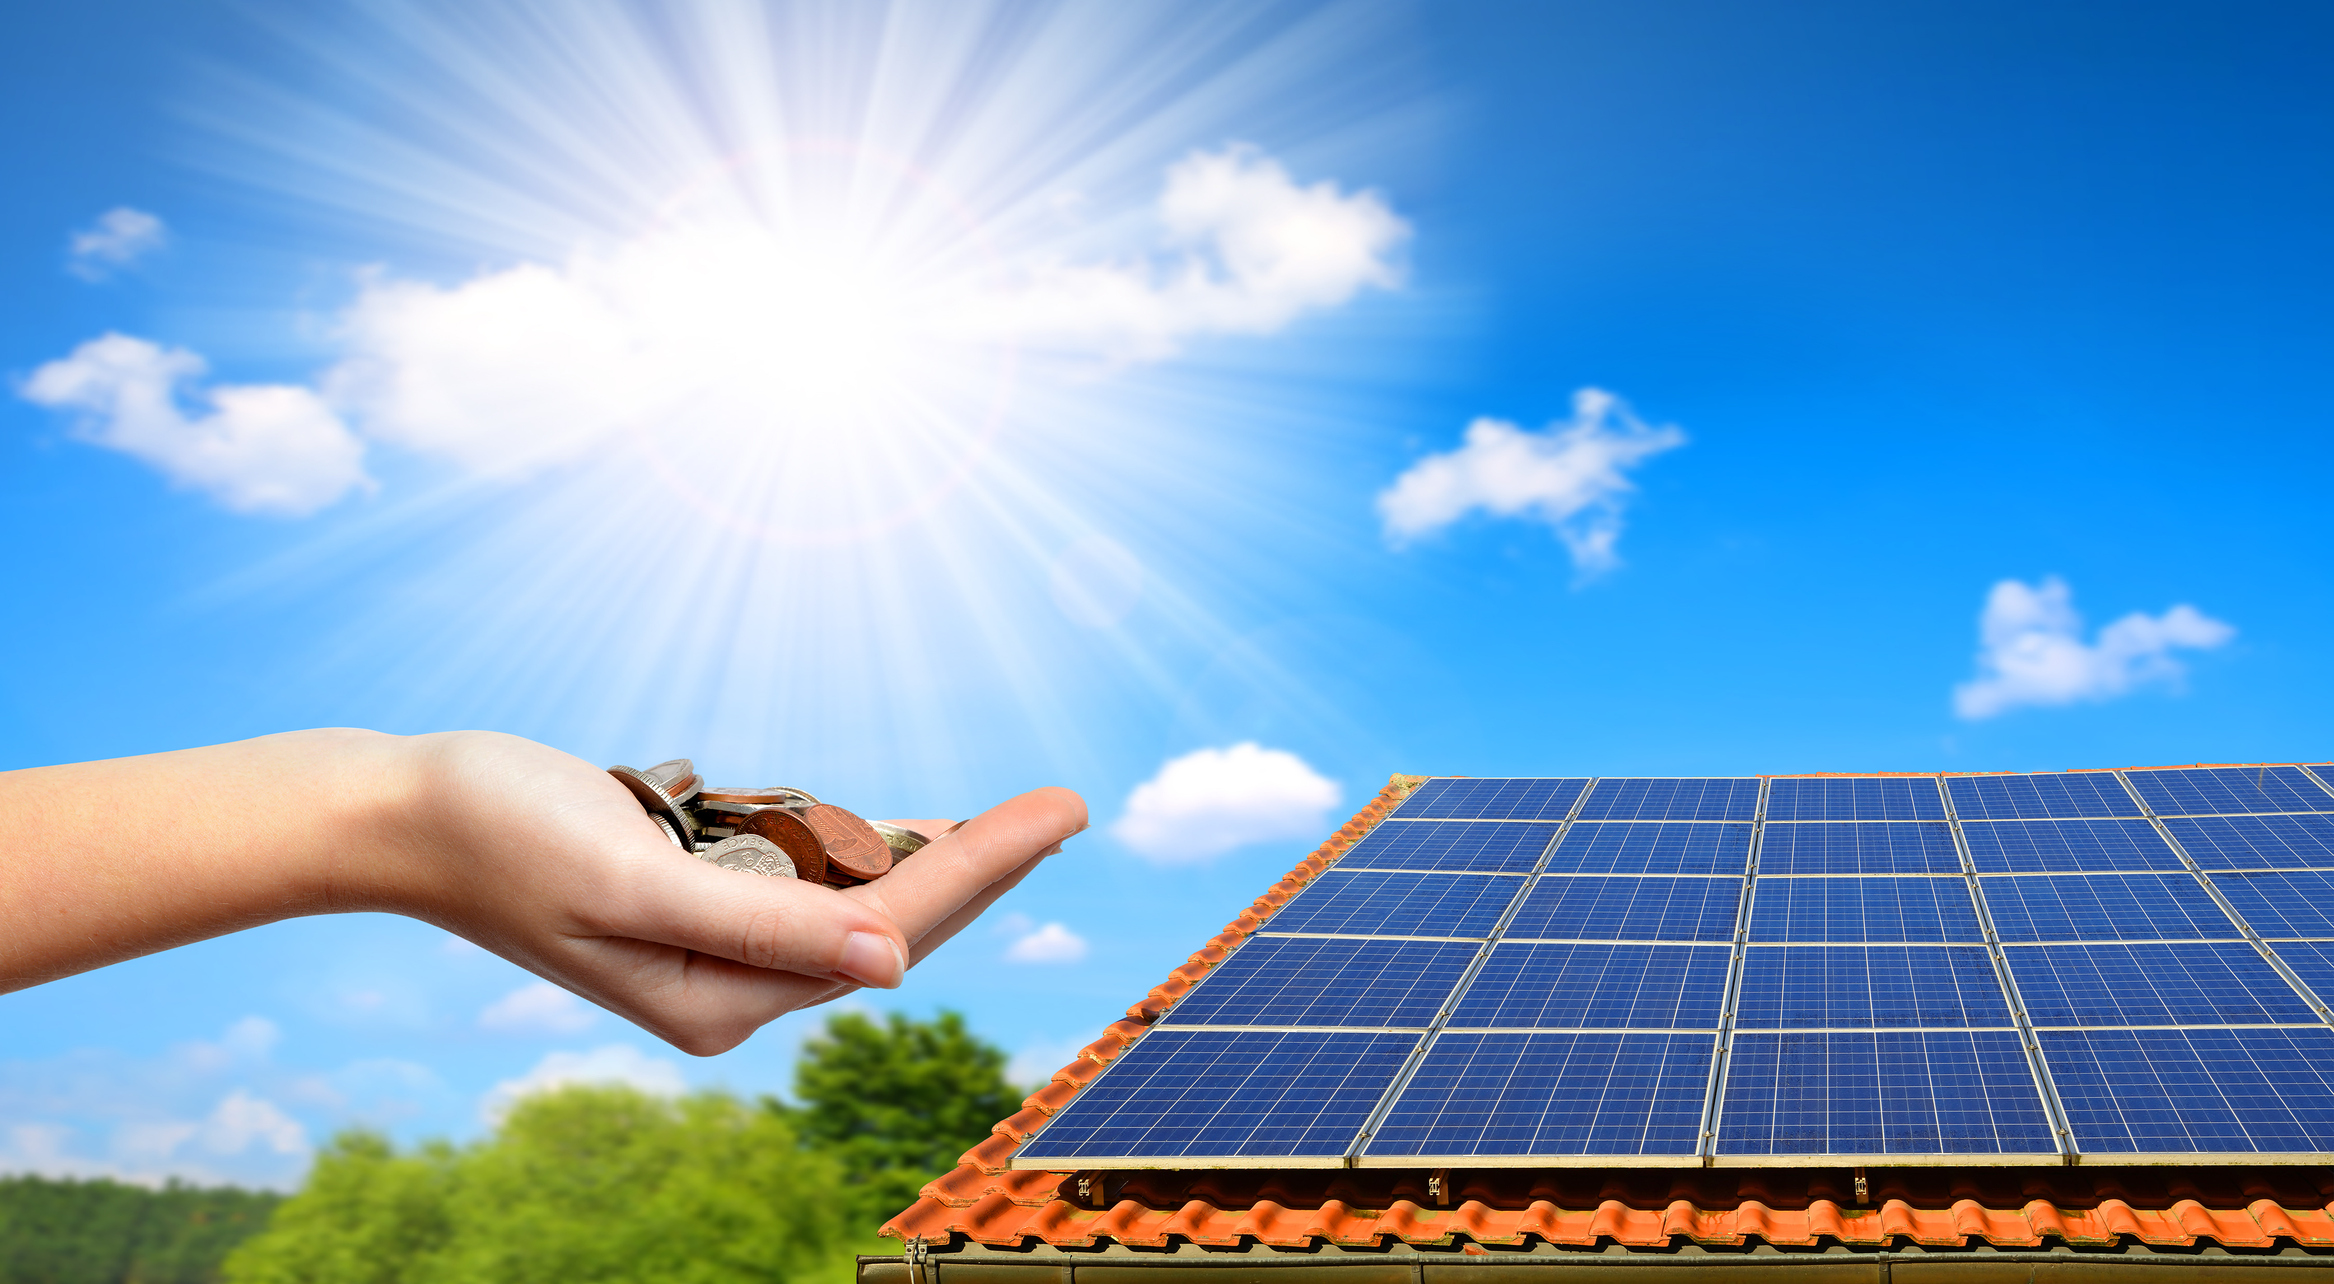 પ્રધાનમંત્રી સૂર્યા ઘર - બી.ઓ.આઇ. સ્ટાર રૂફટોપ સોલર પેનલ ફાઇનાન્સ લોન